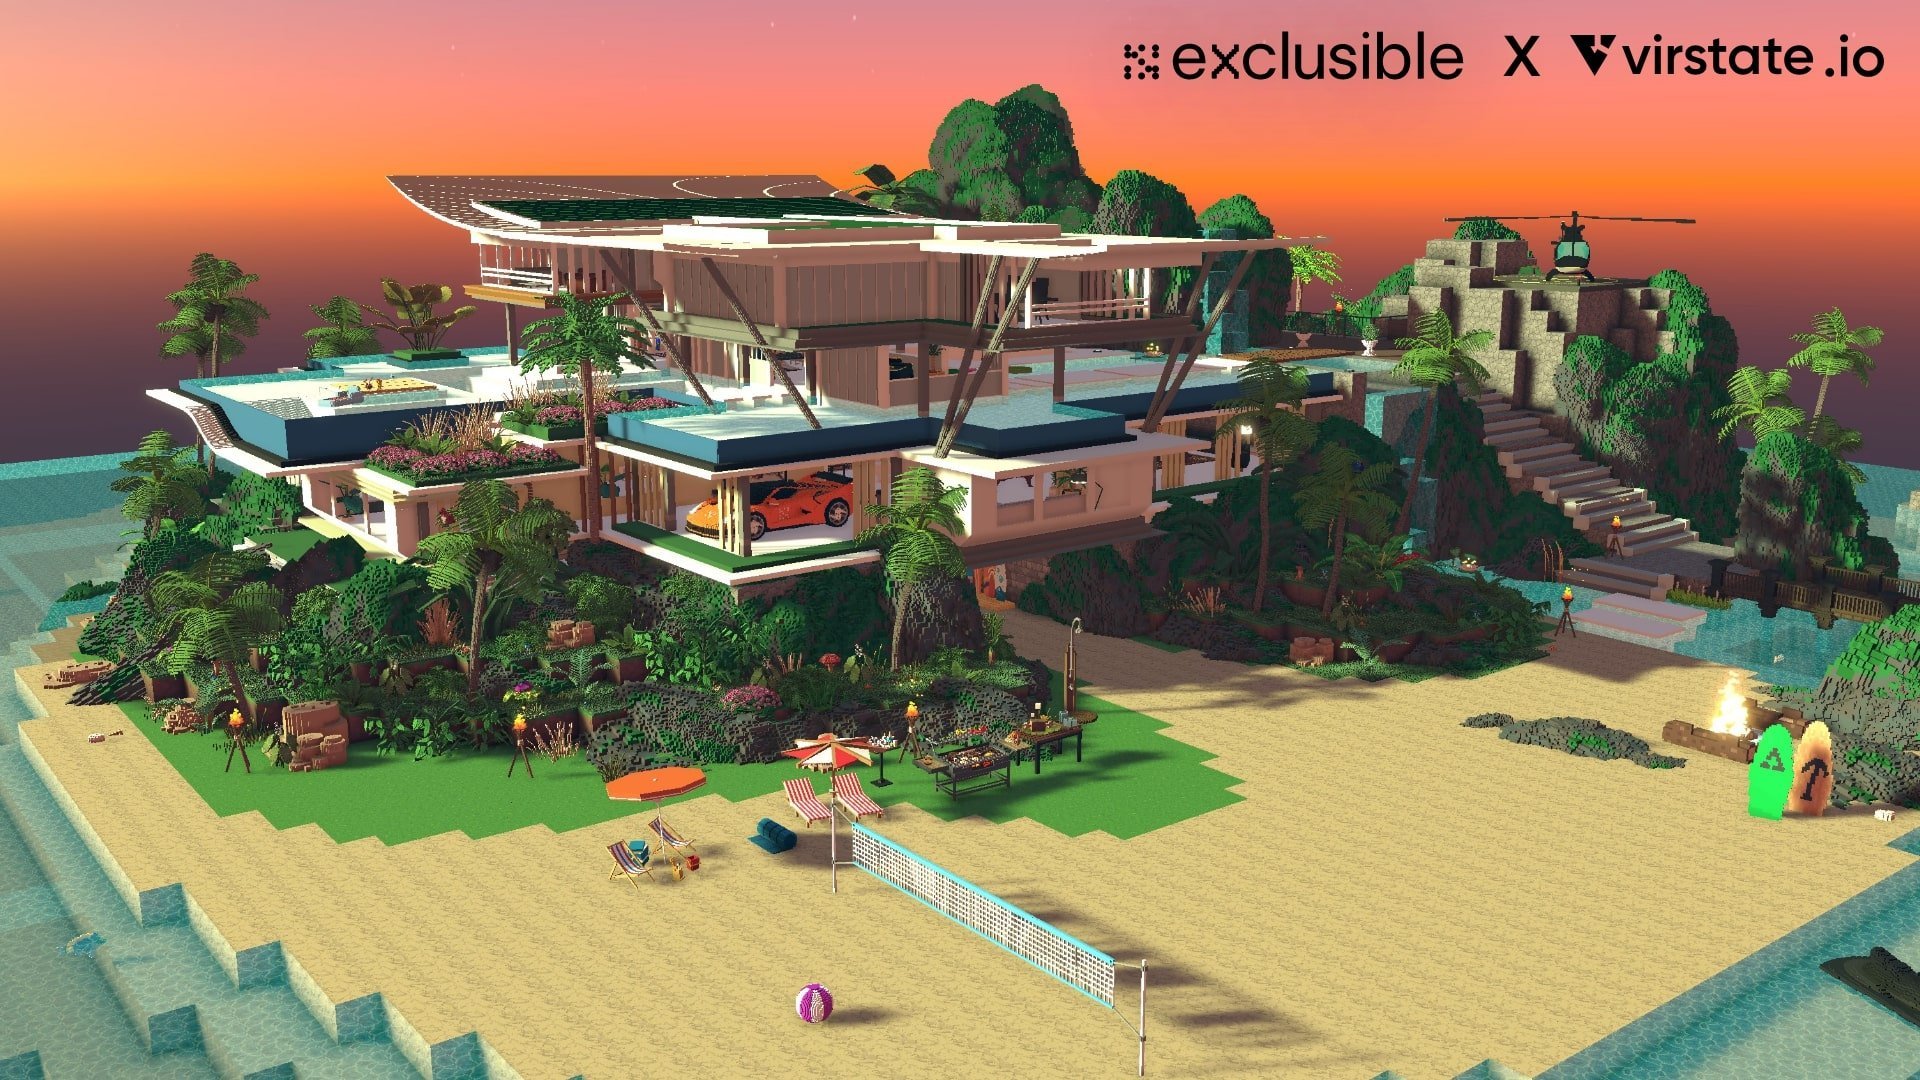 Web3 company Exclusible's luxury metaverse villa